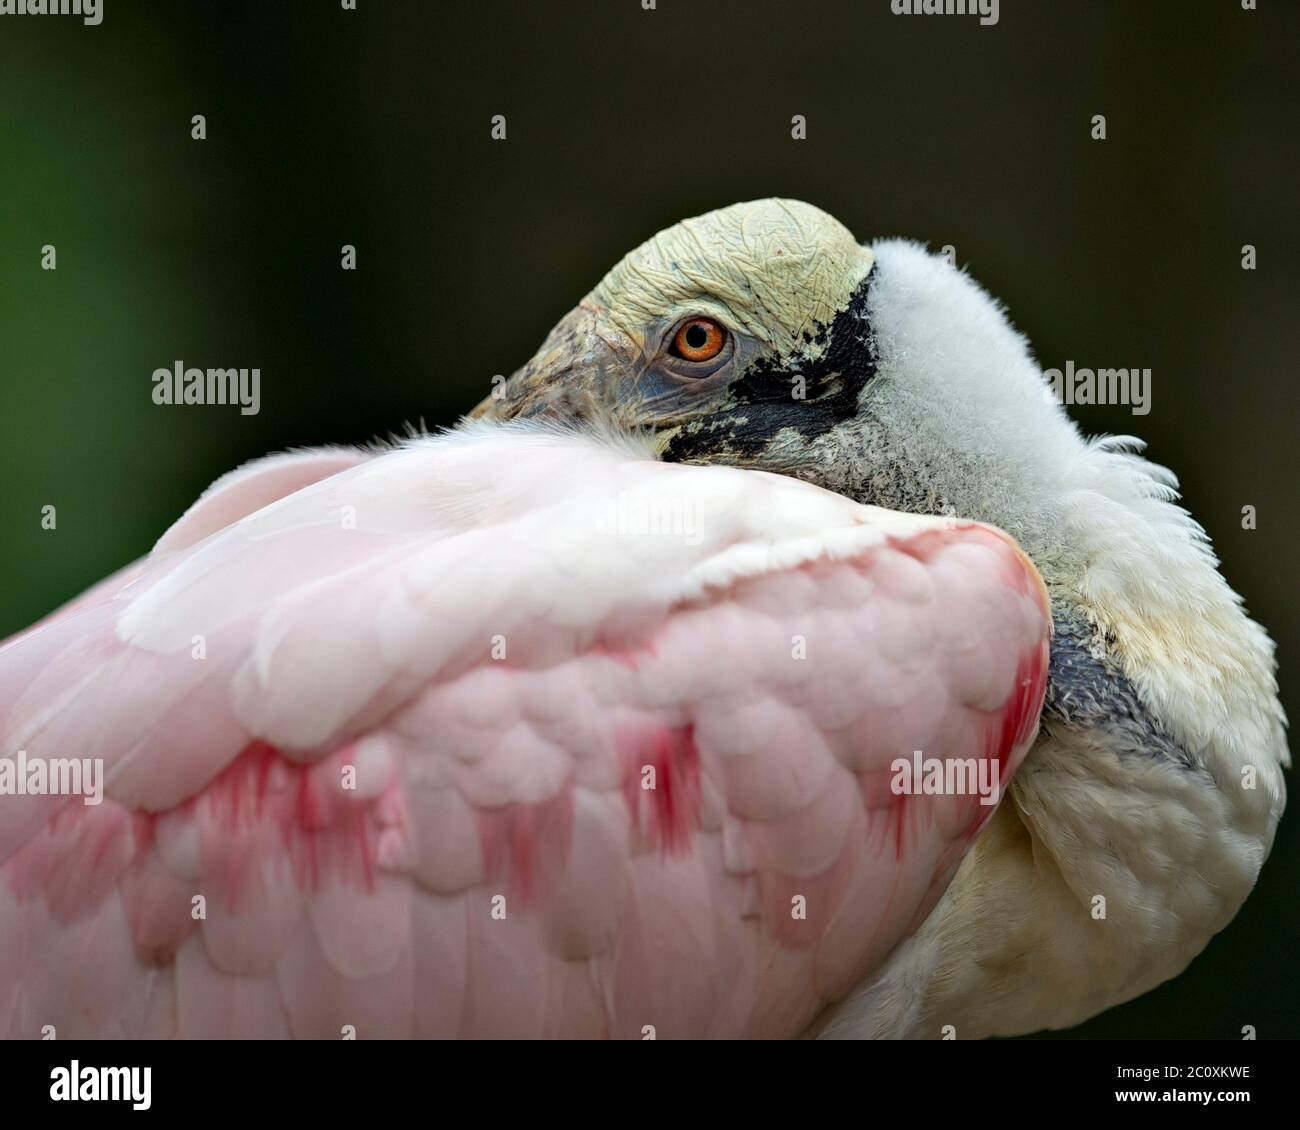 Roseate Spoonbill uccello con una vista ravvicinata visualizzando la sua testa, occhio e piumaggio con un bel bokeh sfondo nel suo ambiente e dintorni. Foto Stock